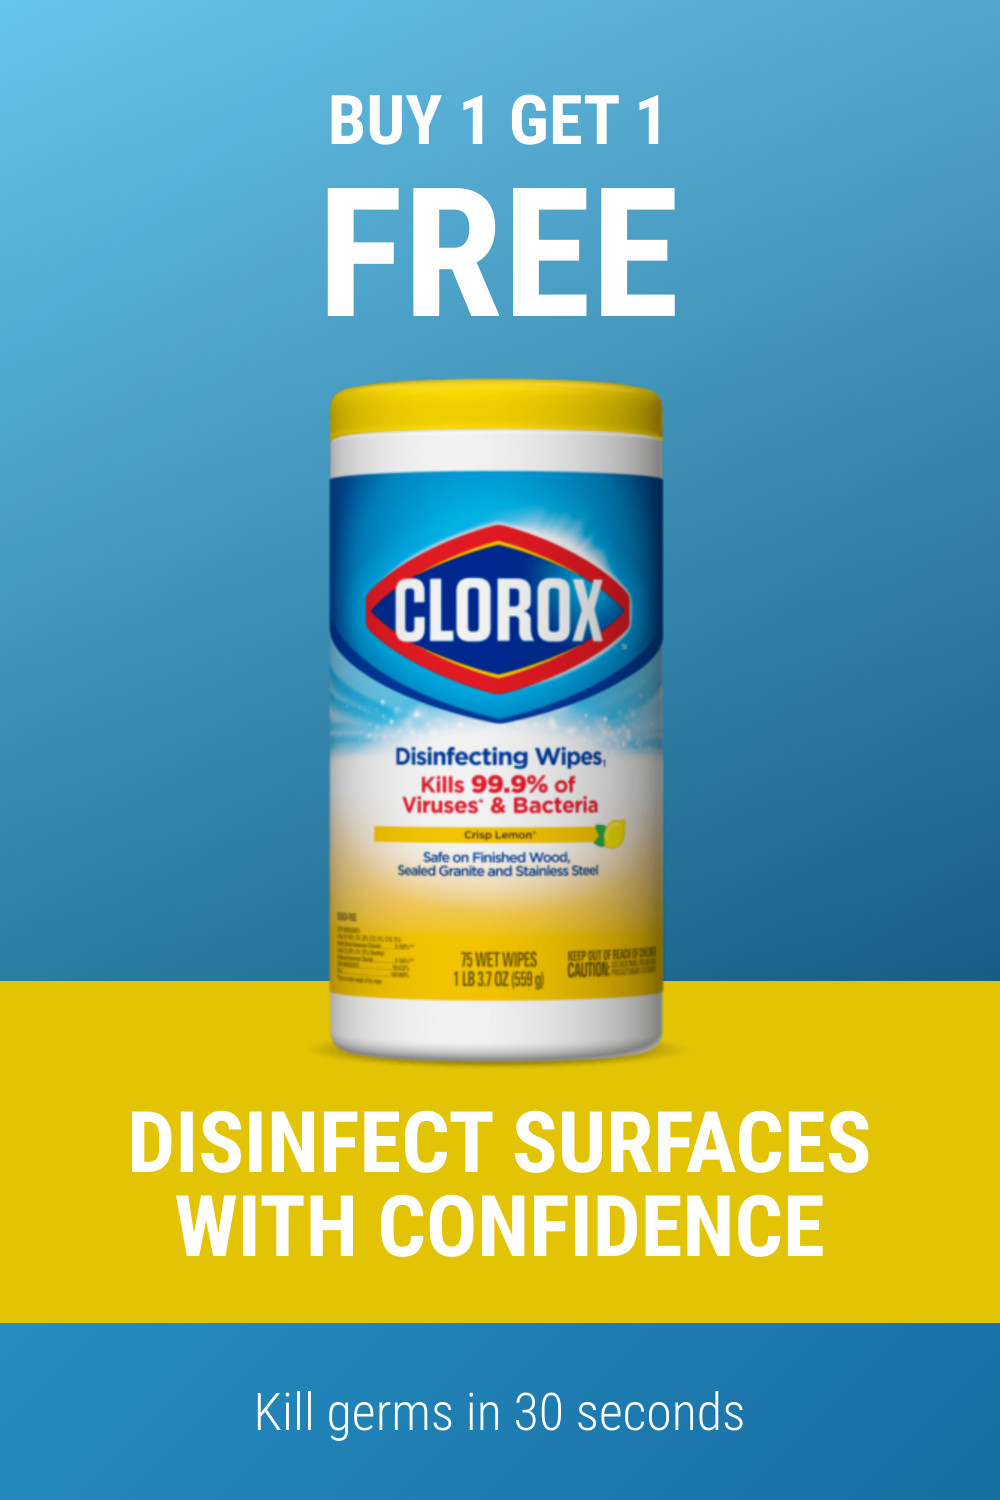 Clorox Kill Germs Bogo Deal